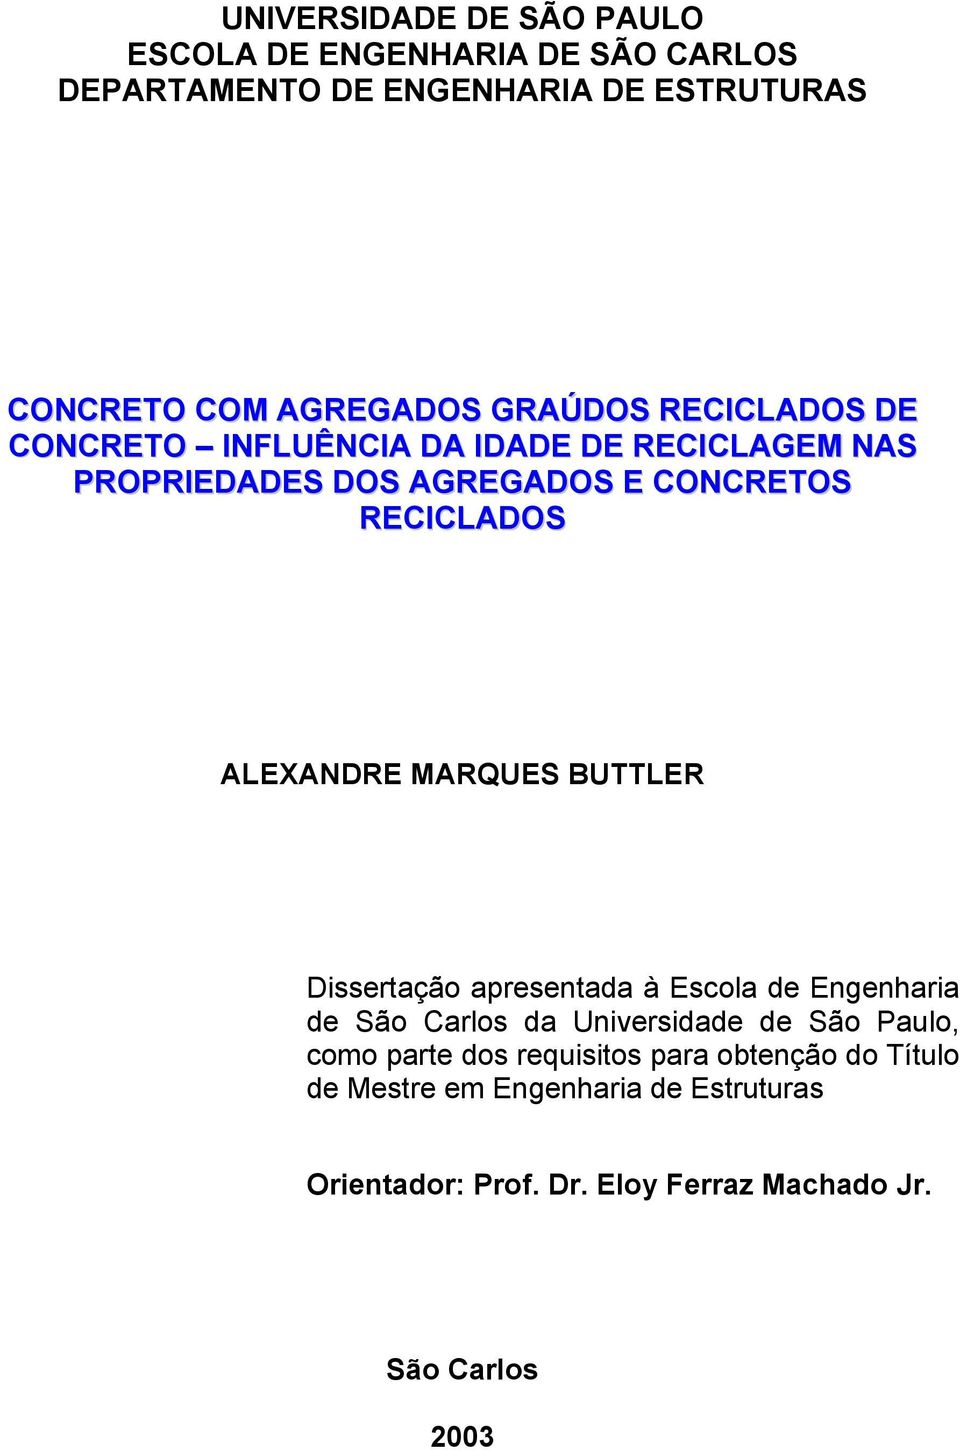 ALEXANDRE MARQUES BUTTLER Dissertação apresentada à Escola de Engenharia de São Carlos da Universidade de São Paulo, como parte